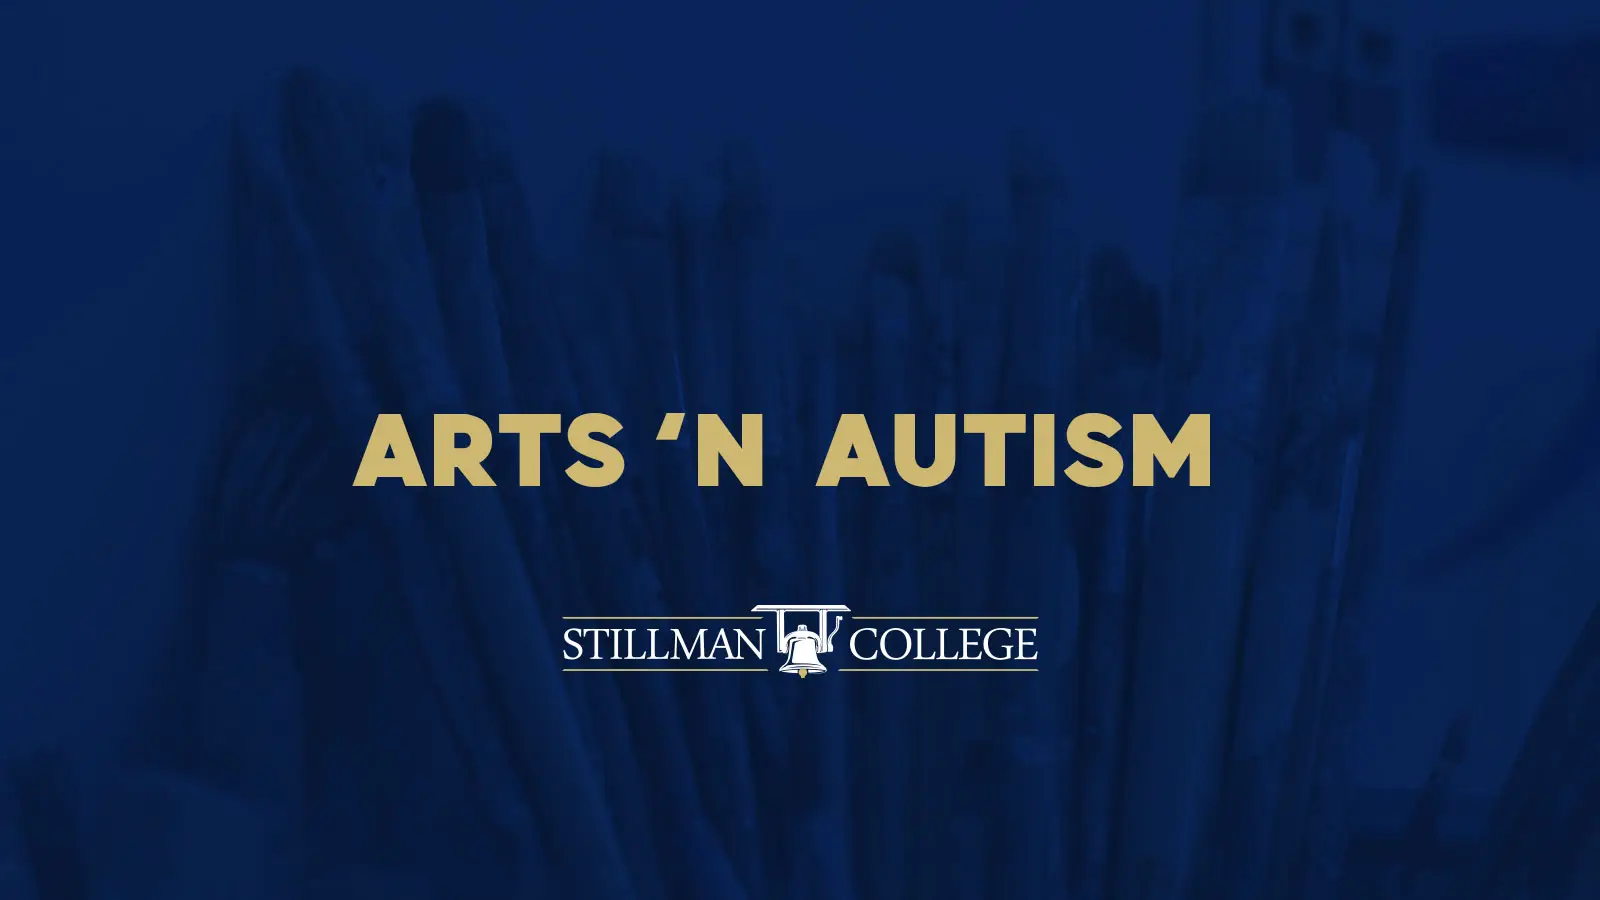 Arts n autism